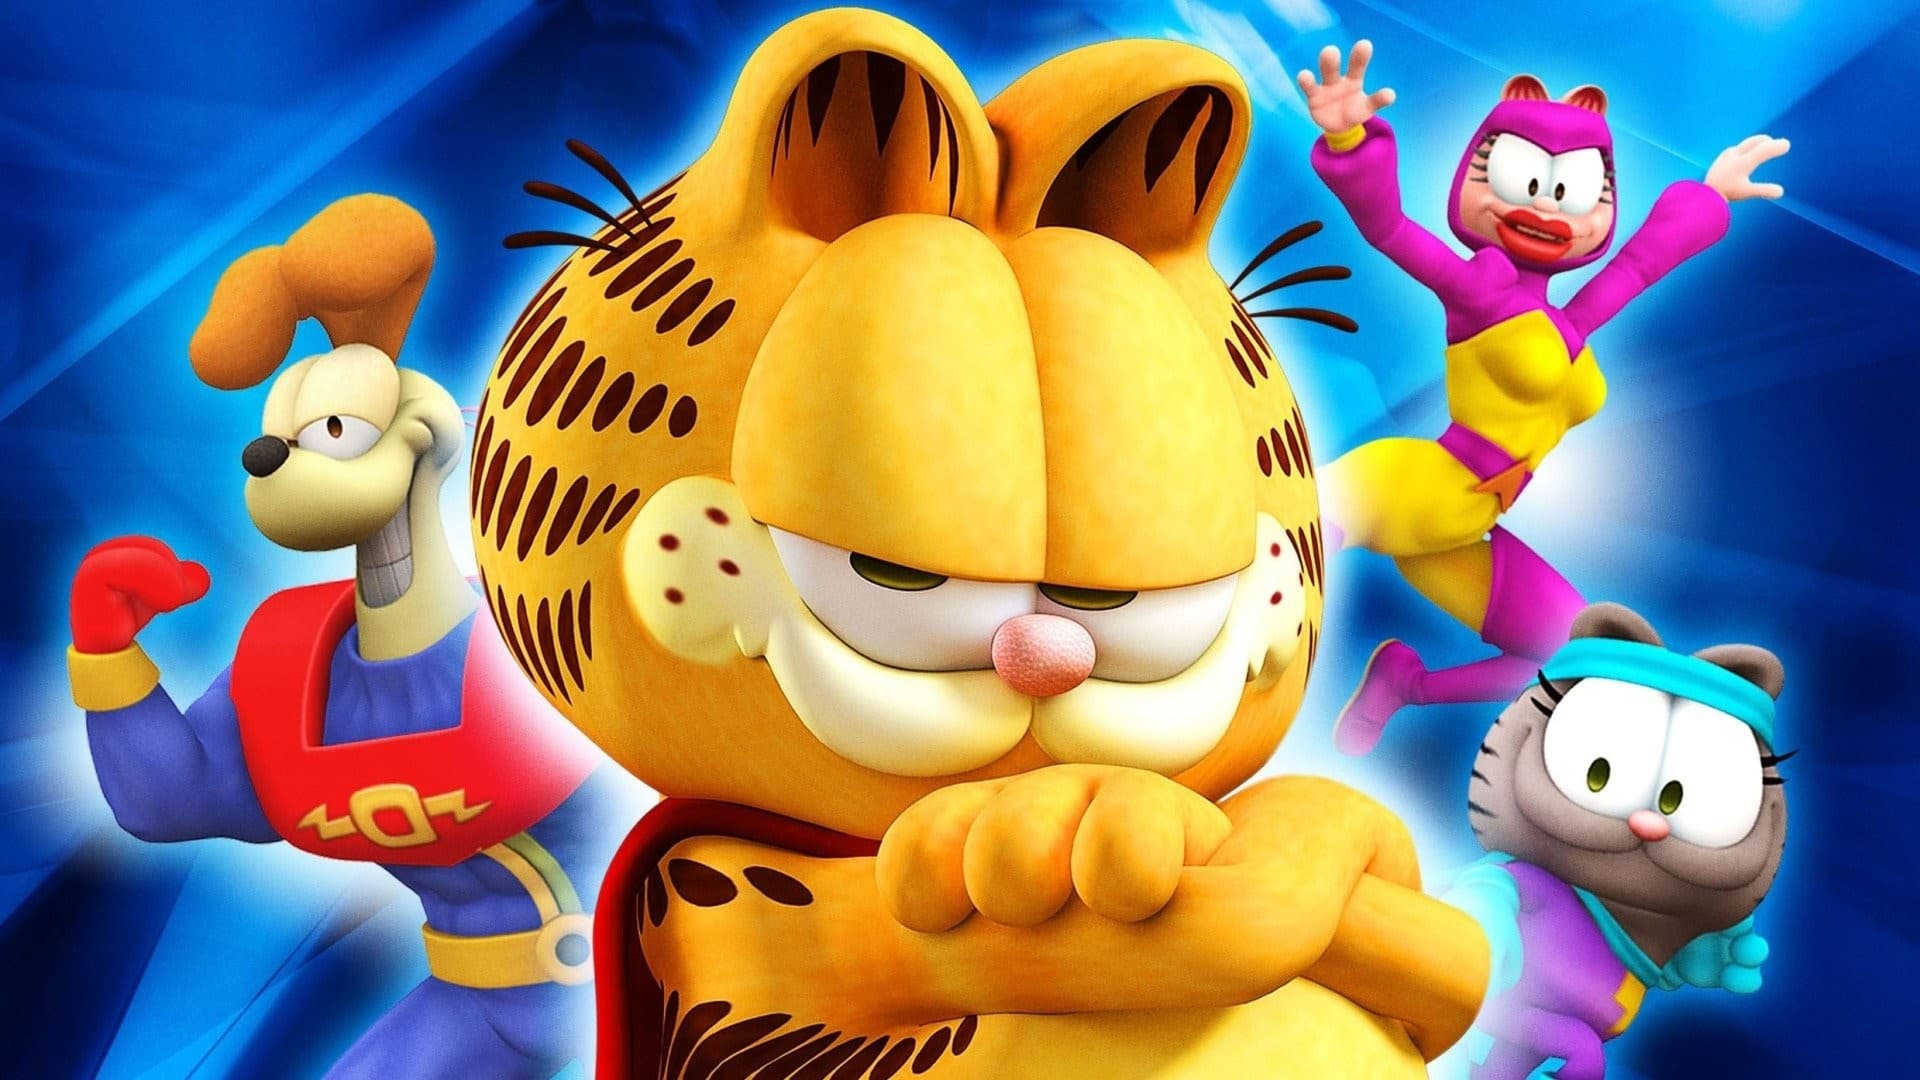 دانلود انیمیشن Garfield’s Pet Force 2009